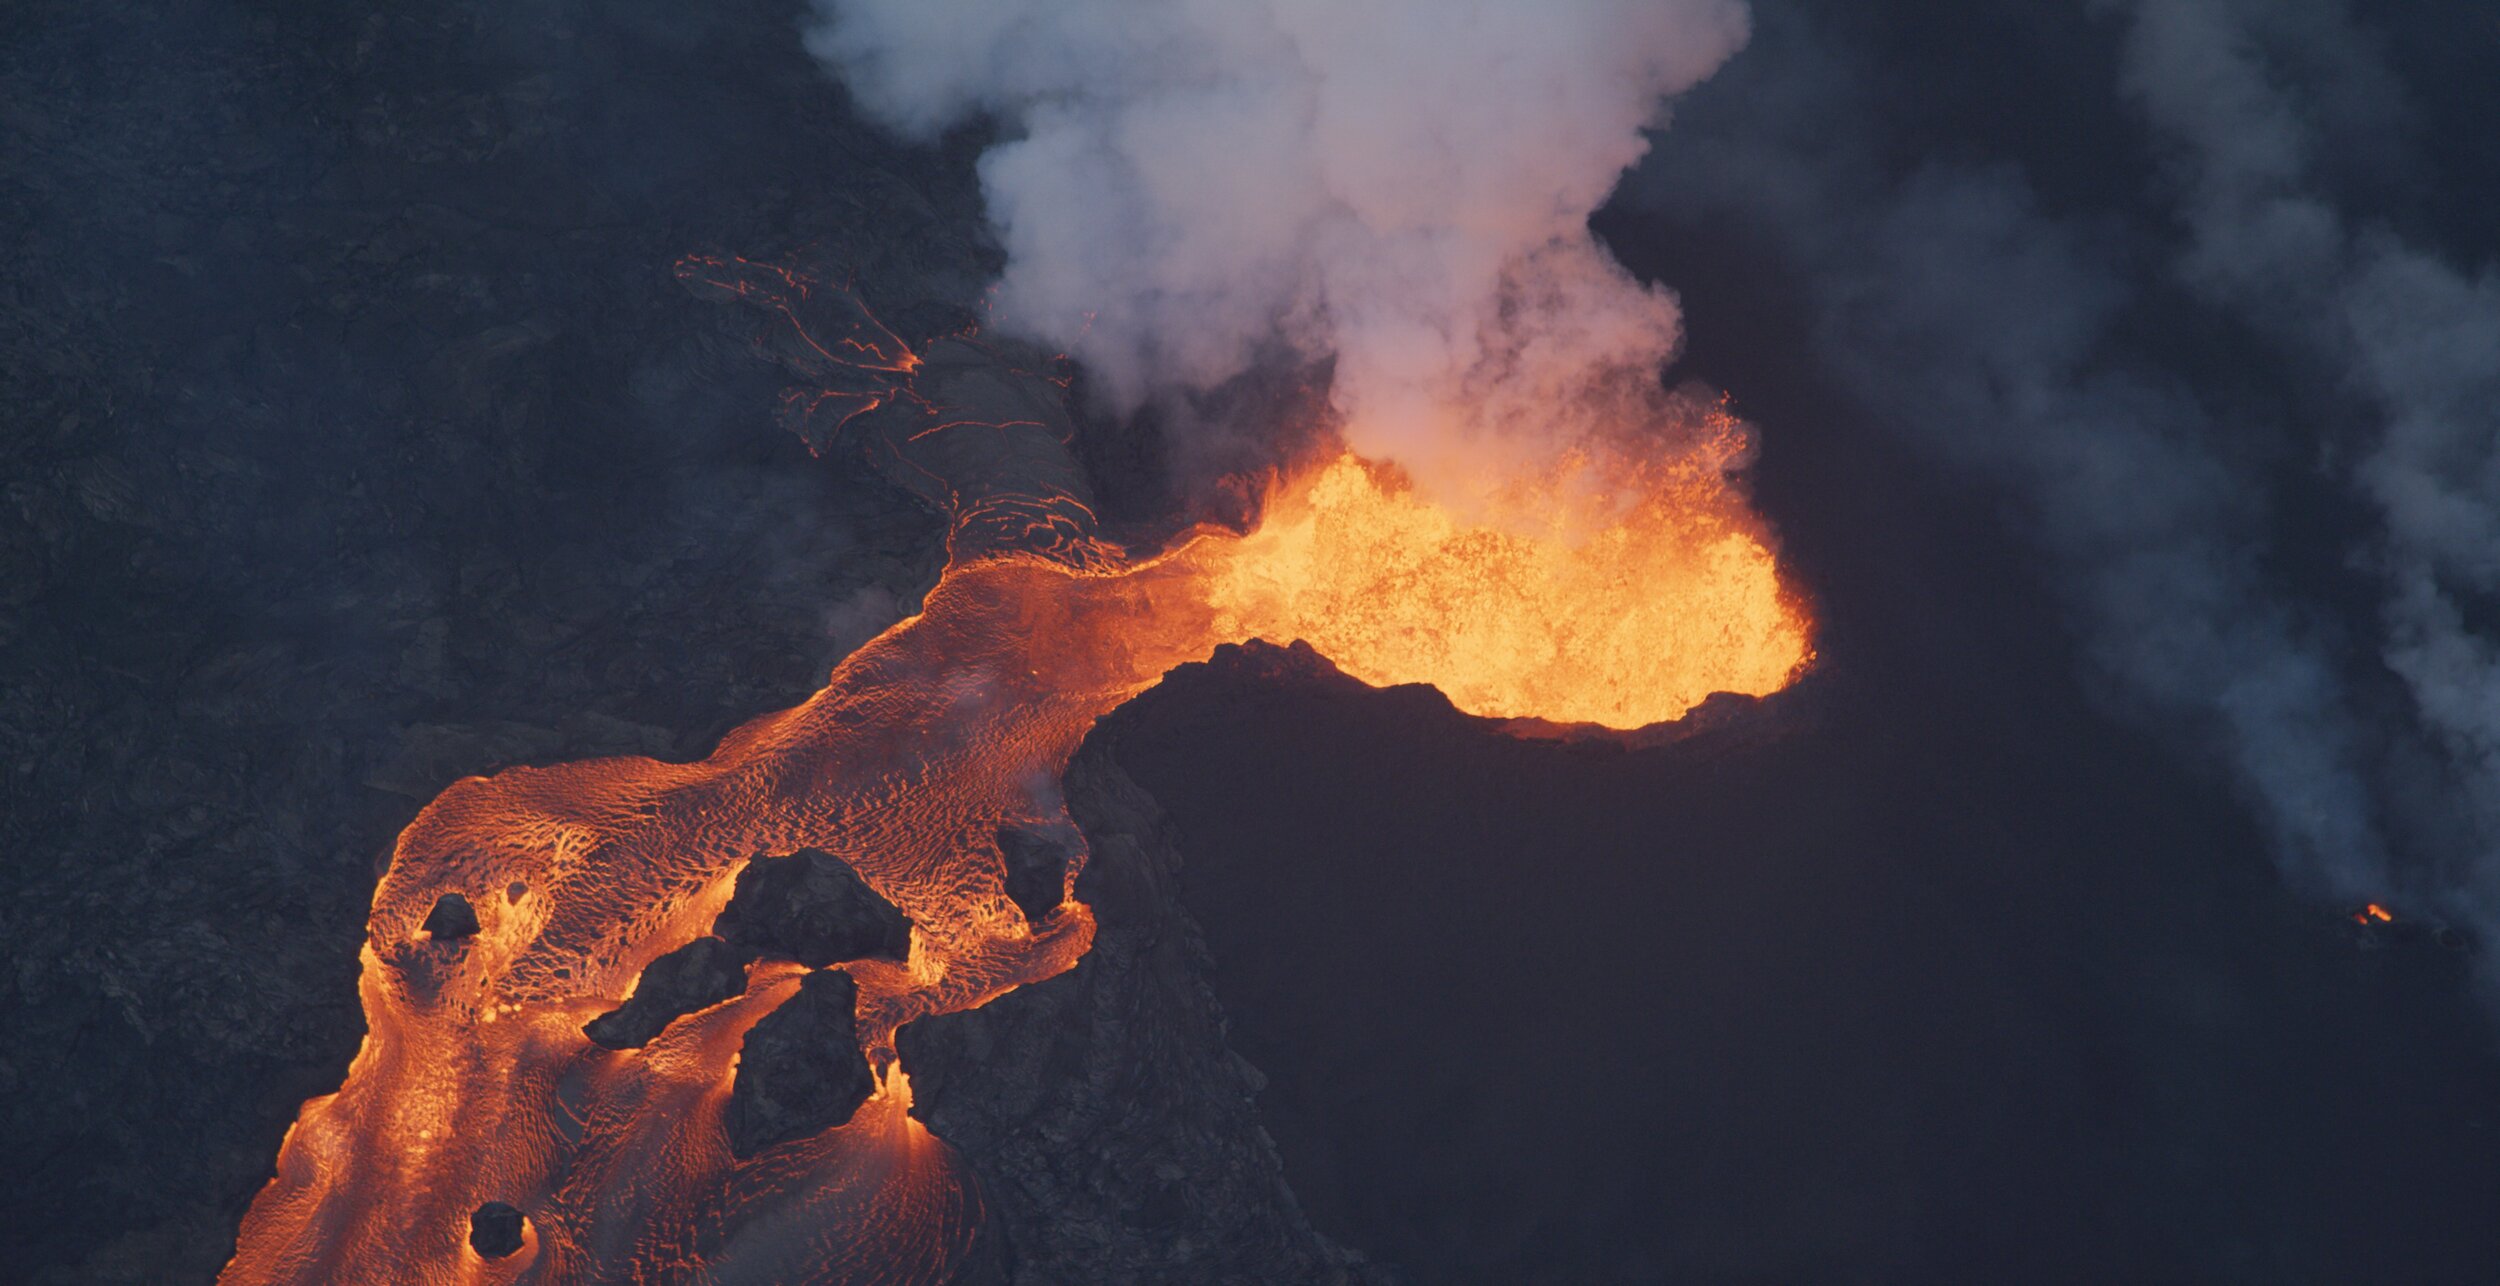 Kilauea eruption aerial view - Michael Lienau.jpg